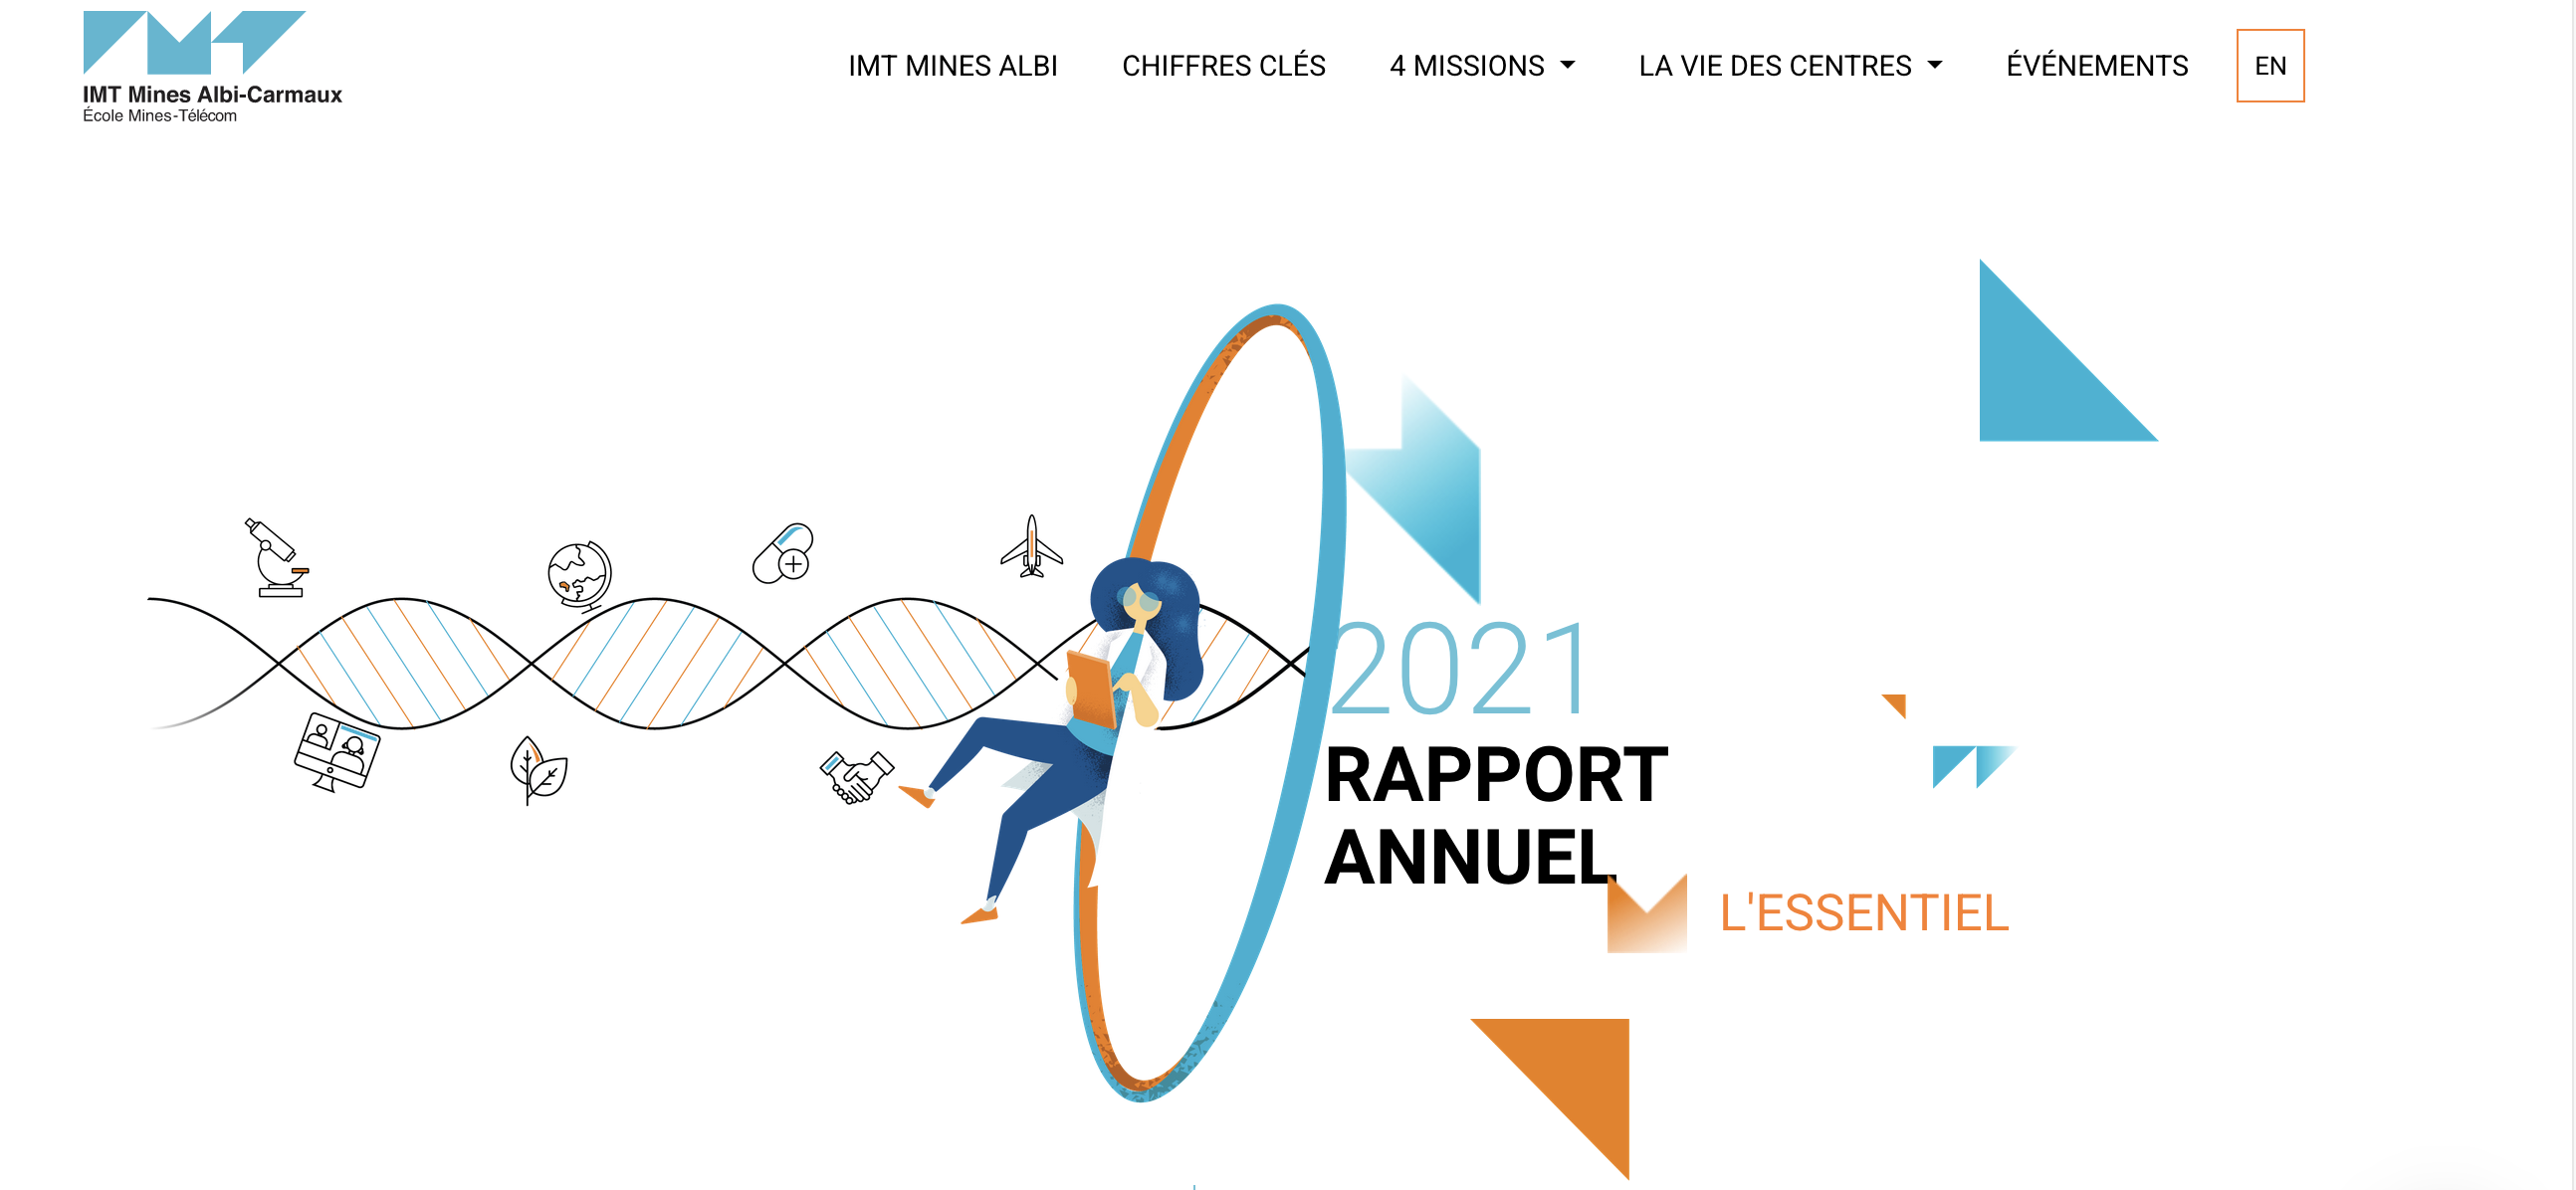 Visuel rapport annuel 2021.png